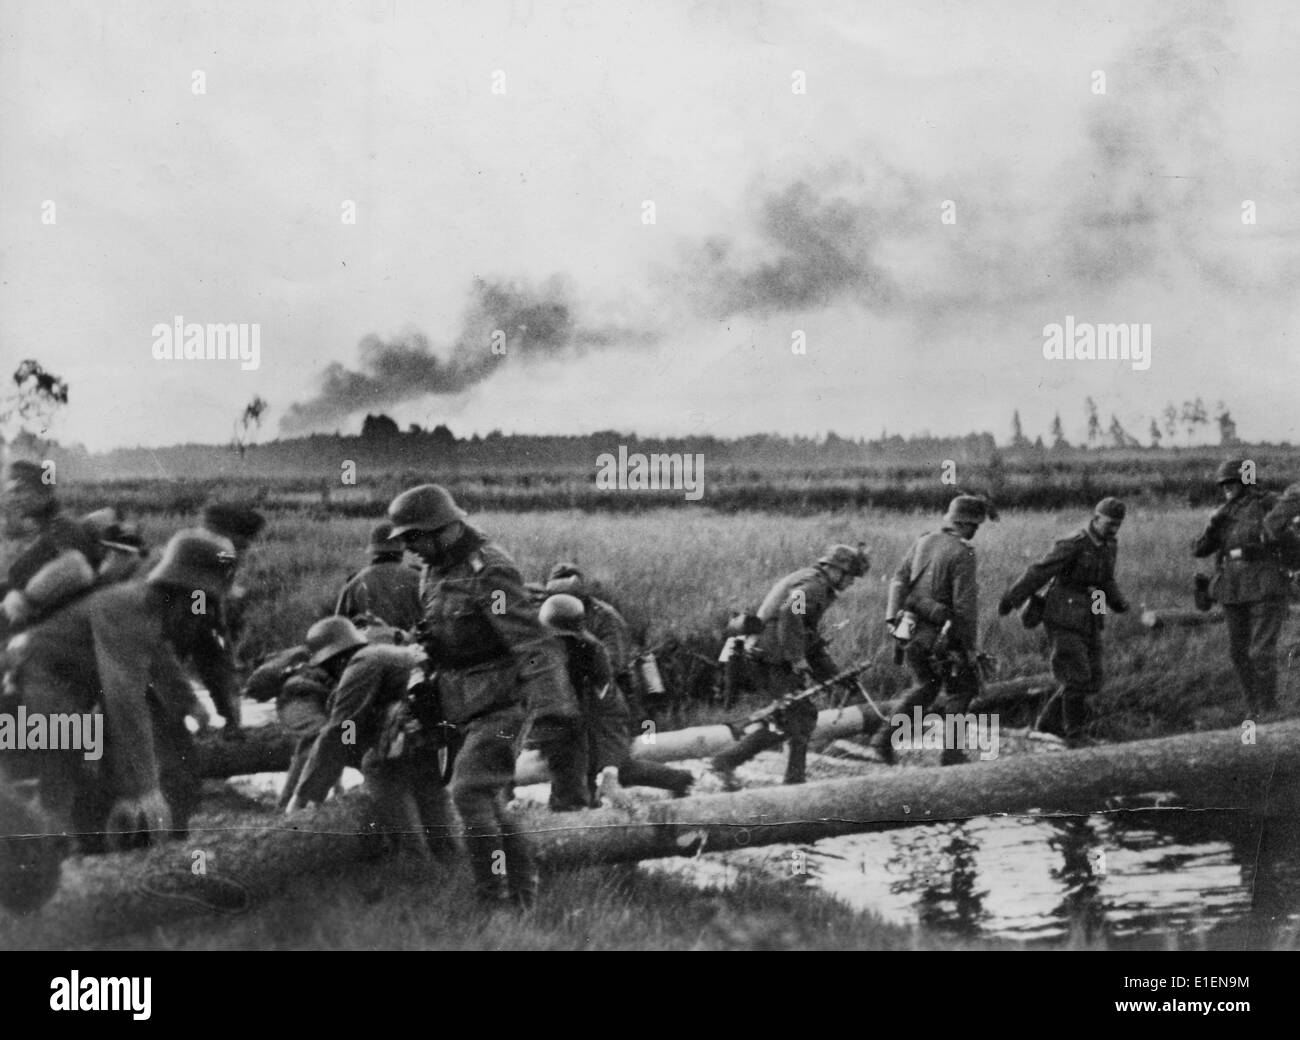 1 день войны в ссср. Войска вермахта пересекают границу СССР. 22 Июня 1941 река Буг. Немецкие солдаты 22 июня 1941.